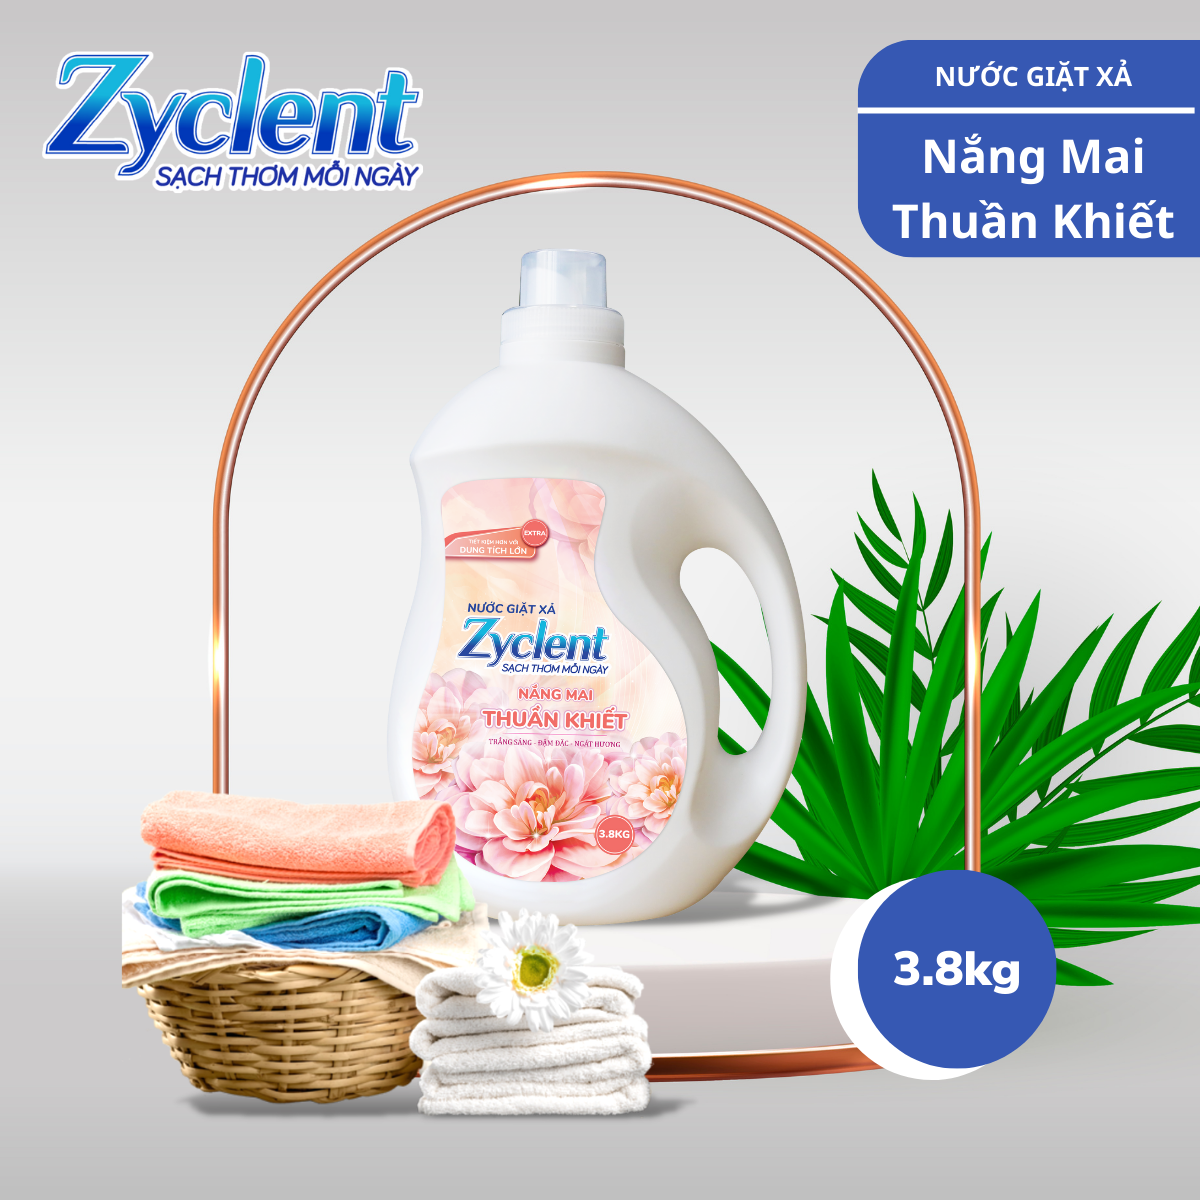 Thùng Nước Giặt Xả Zyclent Extra Hương Nắng Mai Thuần Khiết (3.8kg x 4 can)